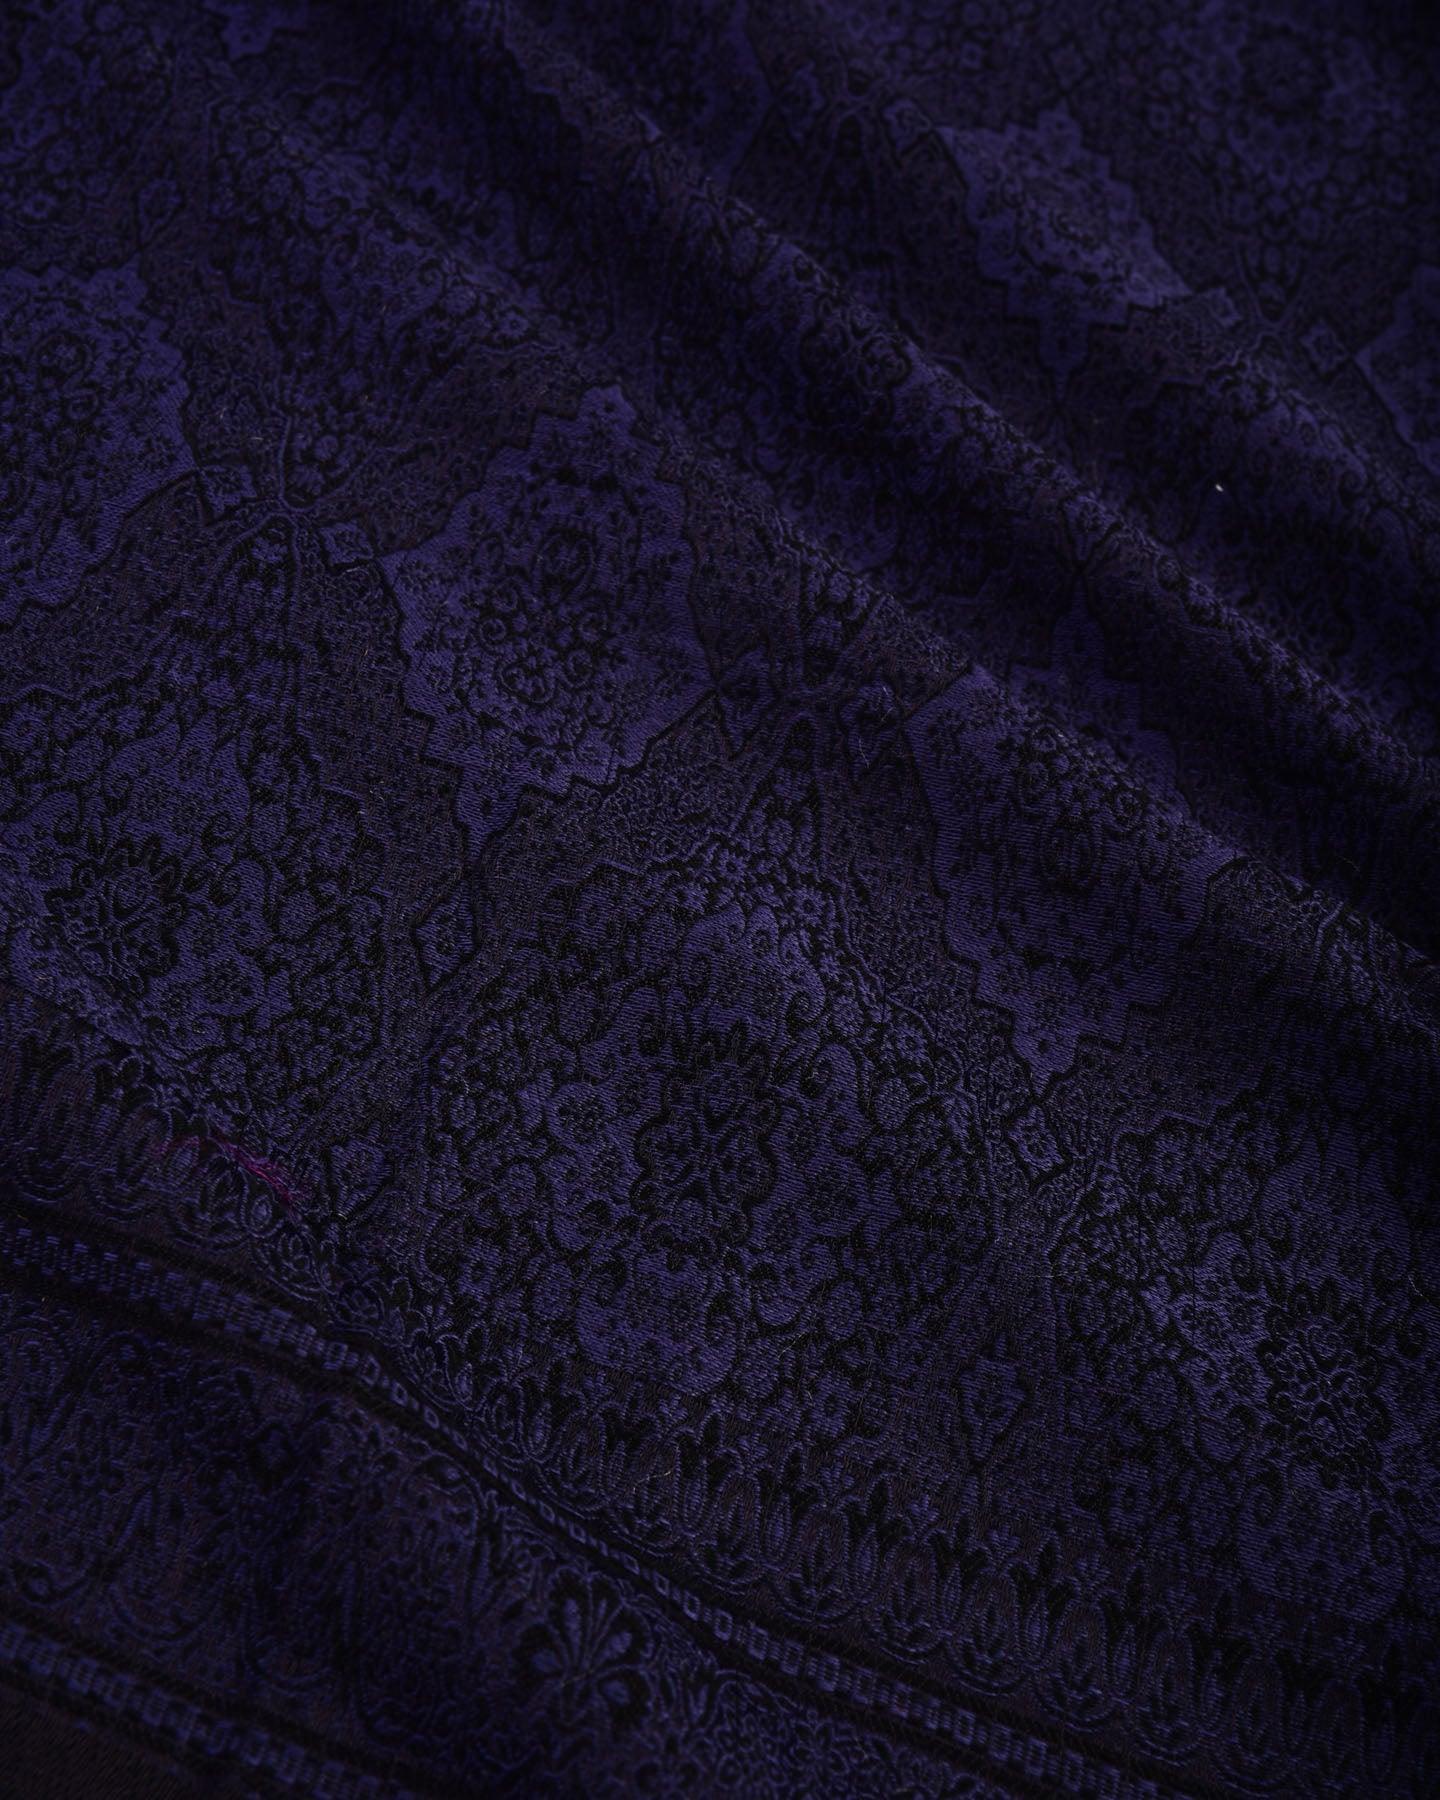 Navyblue on Black Banarasi Alfi Damask Jamawar Handwoven Silk-wool Shawl - By HolyWeaves, Benares